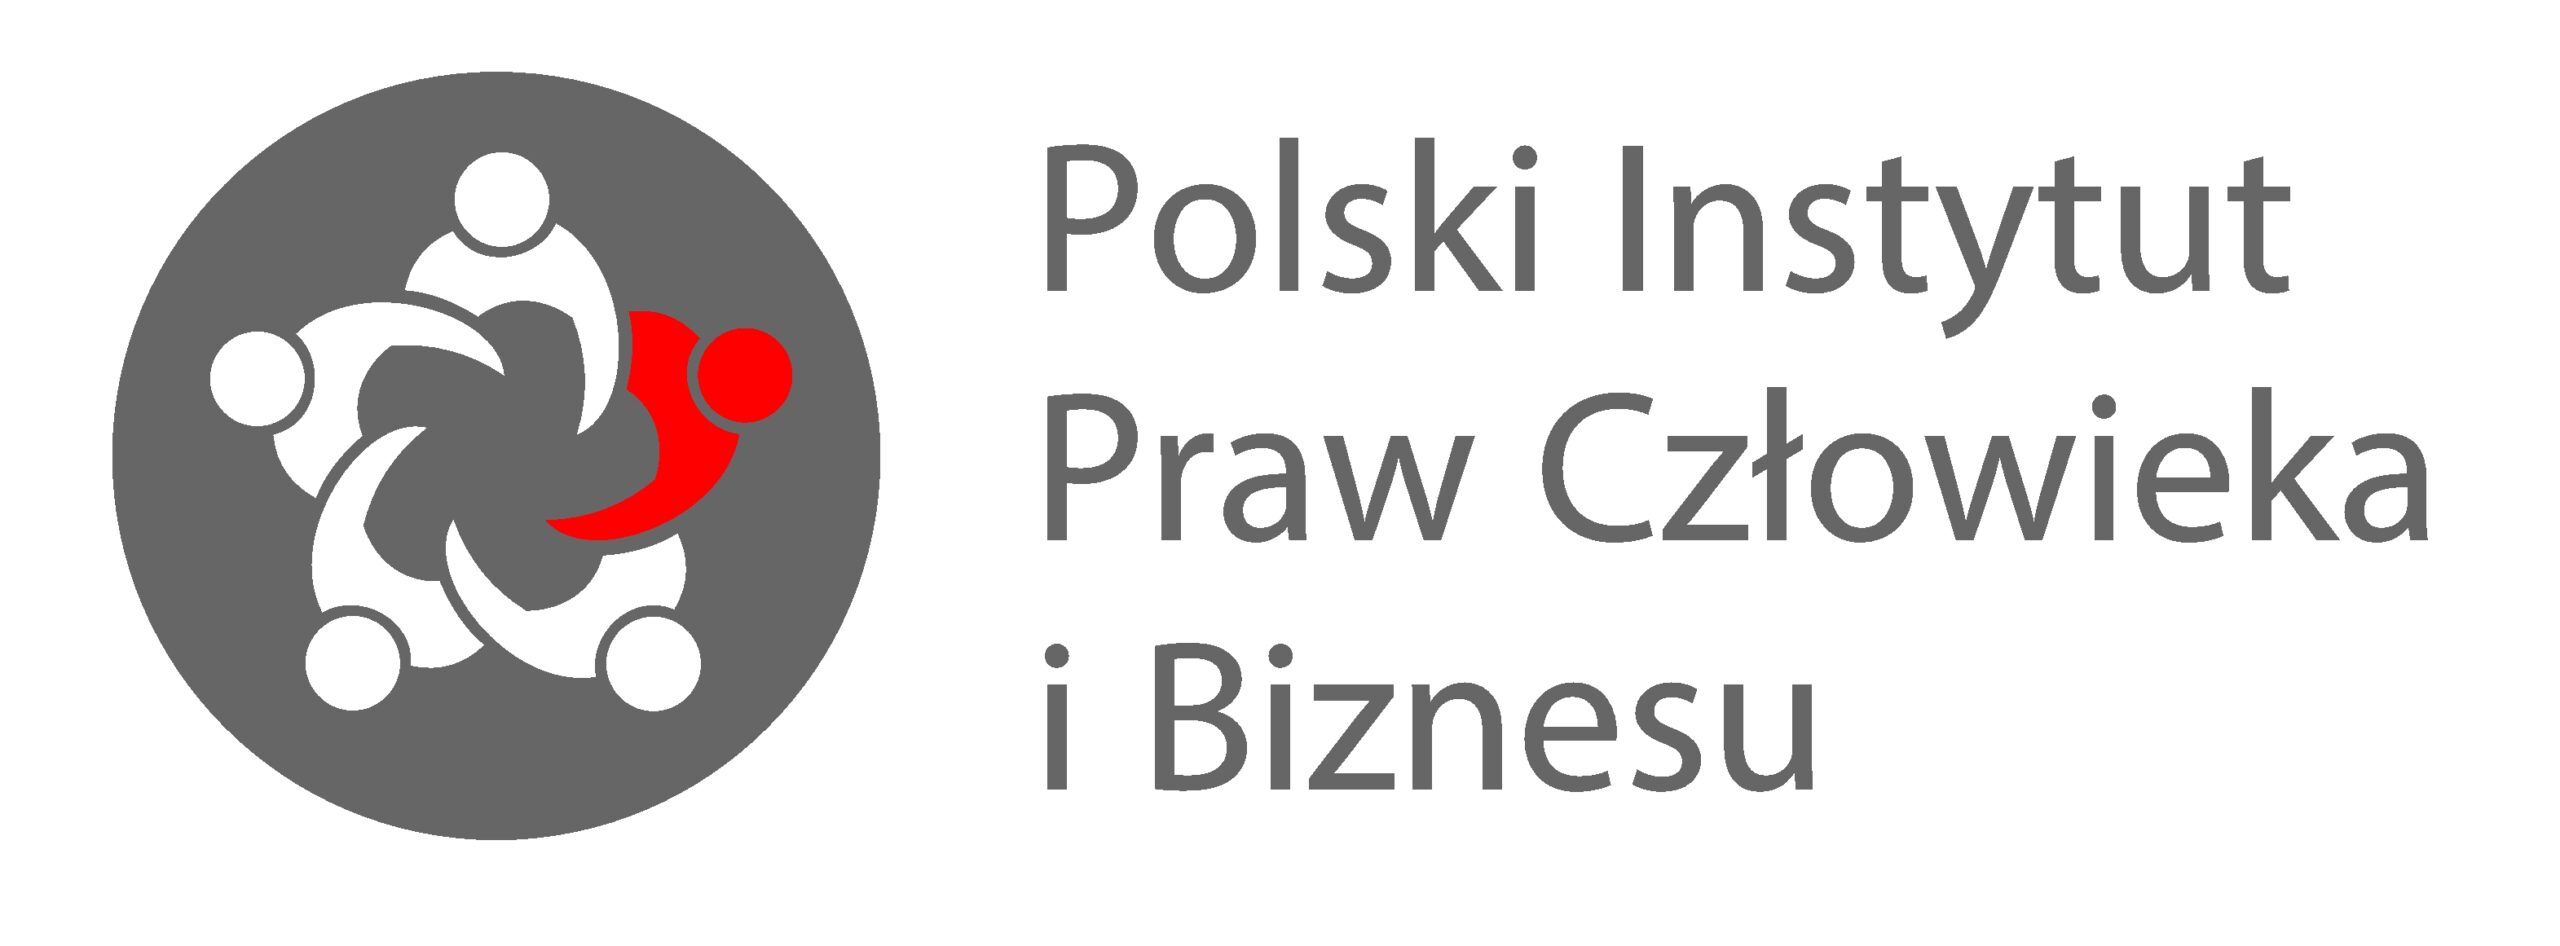 Polski Instytut Praw Człowieka i Biznesu logo